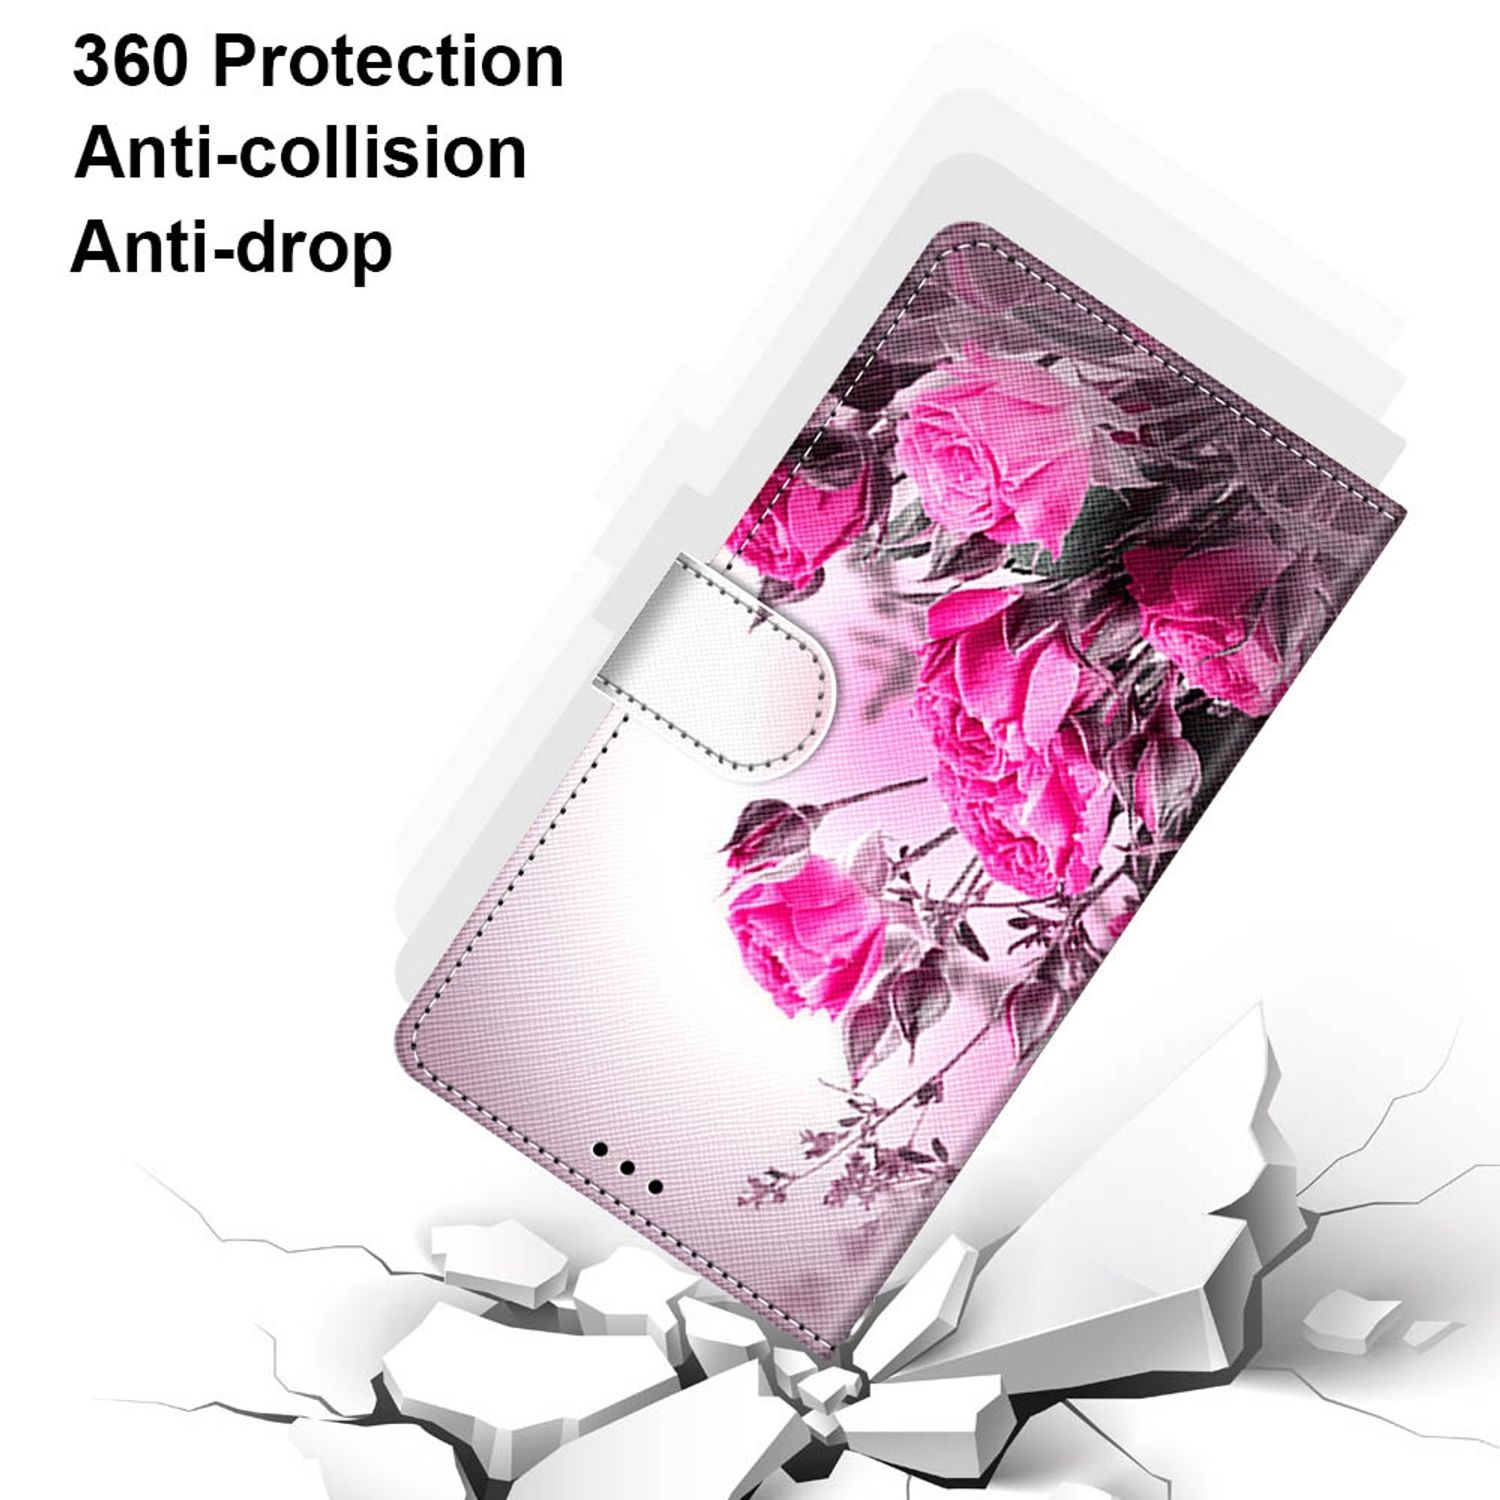 Samsung, Bookcover, DESIGN Rose KÖNIG Wilde 5G, Plus S22 Case, Book Galaxy